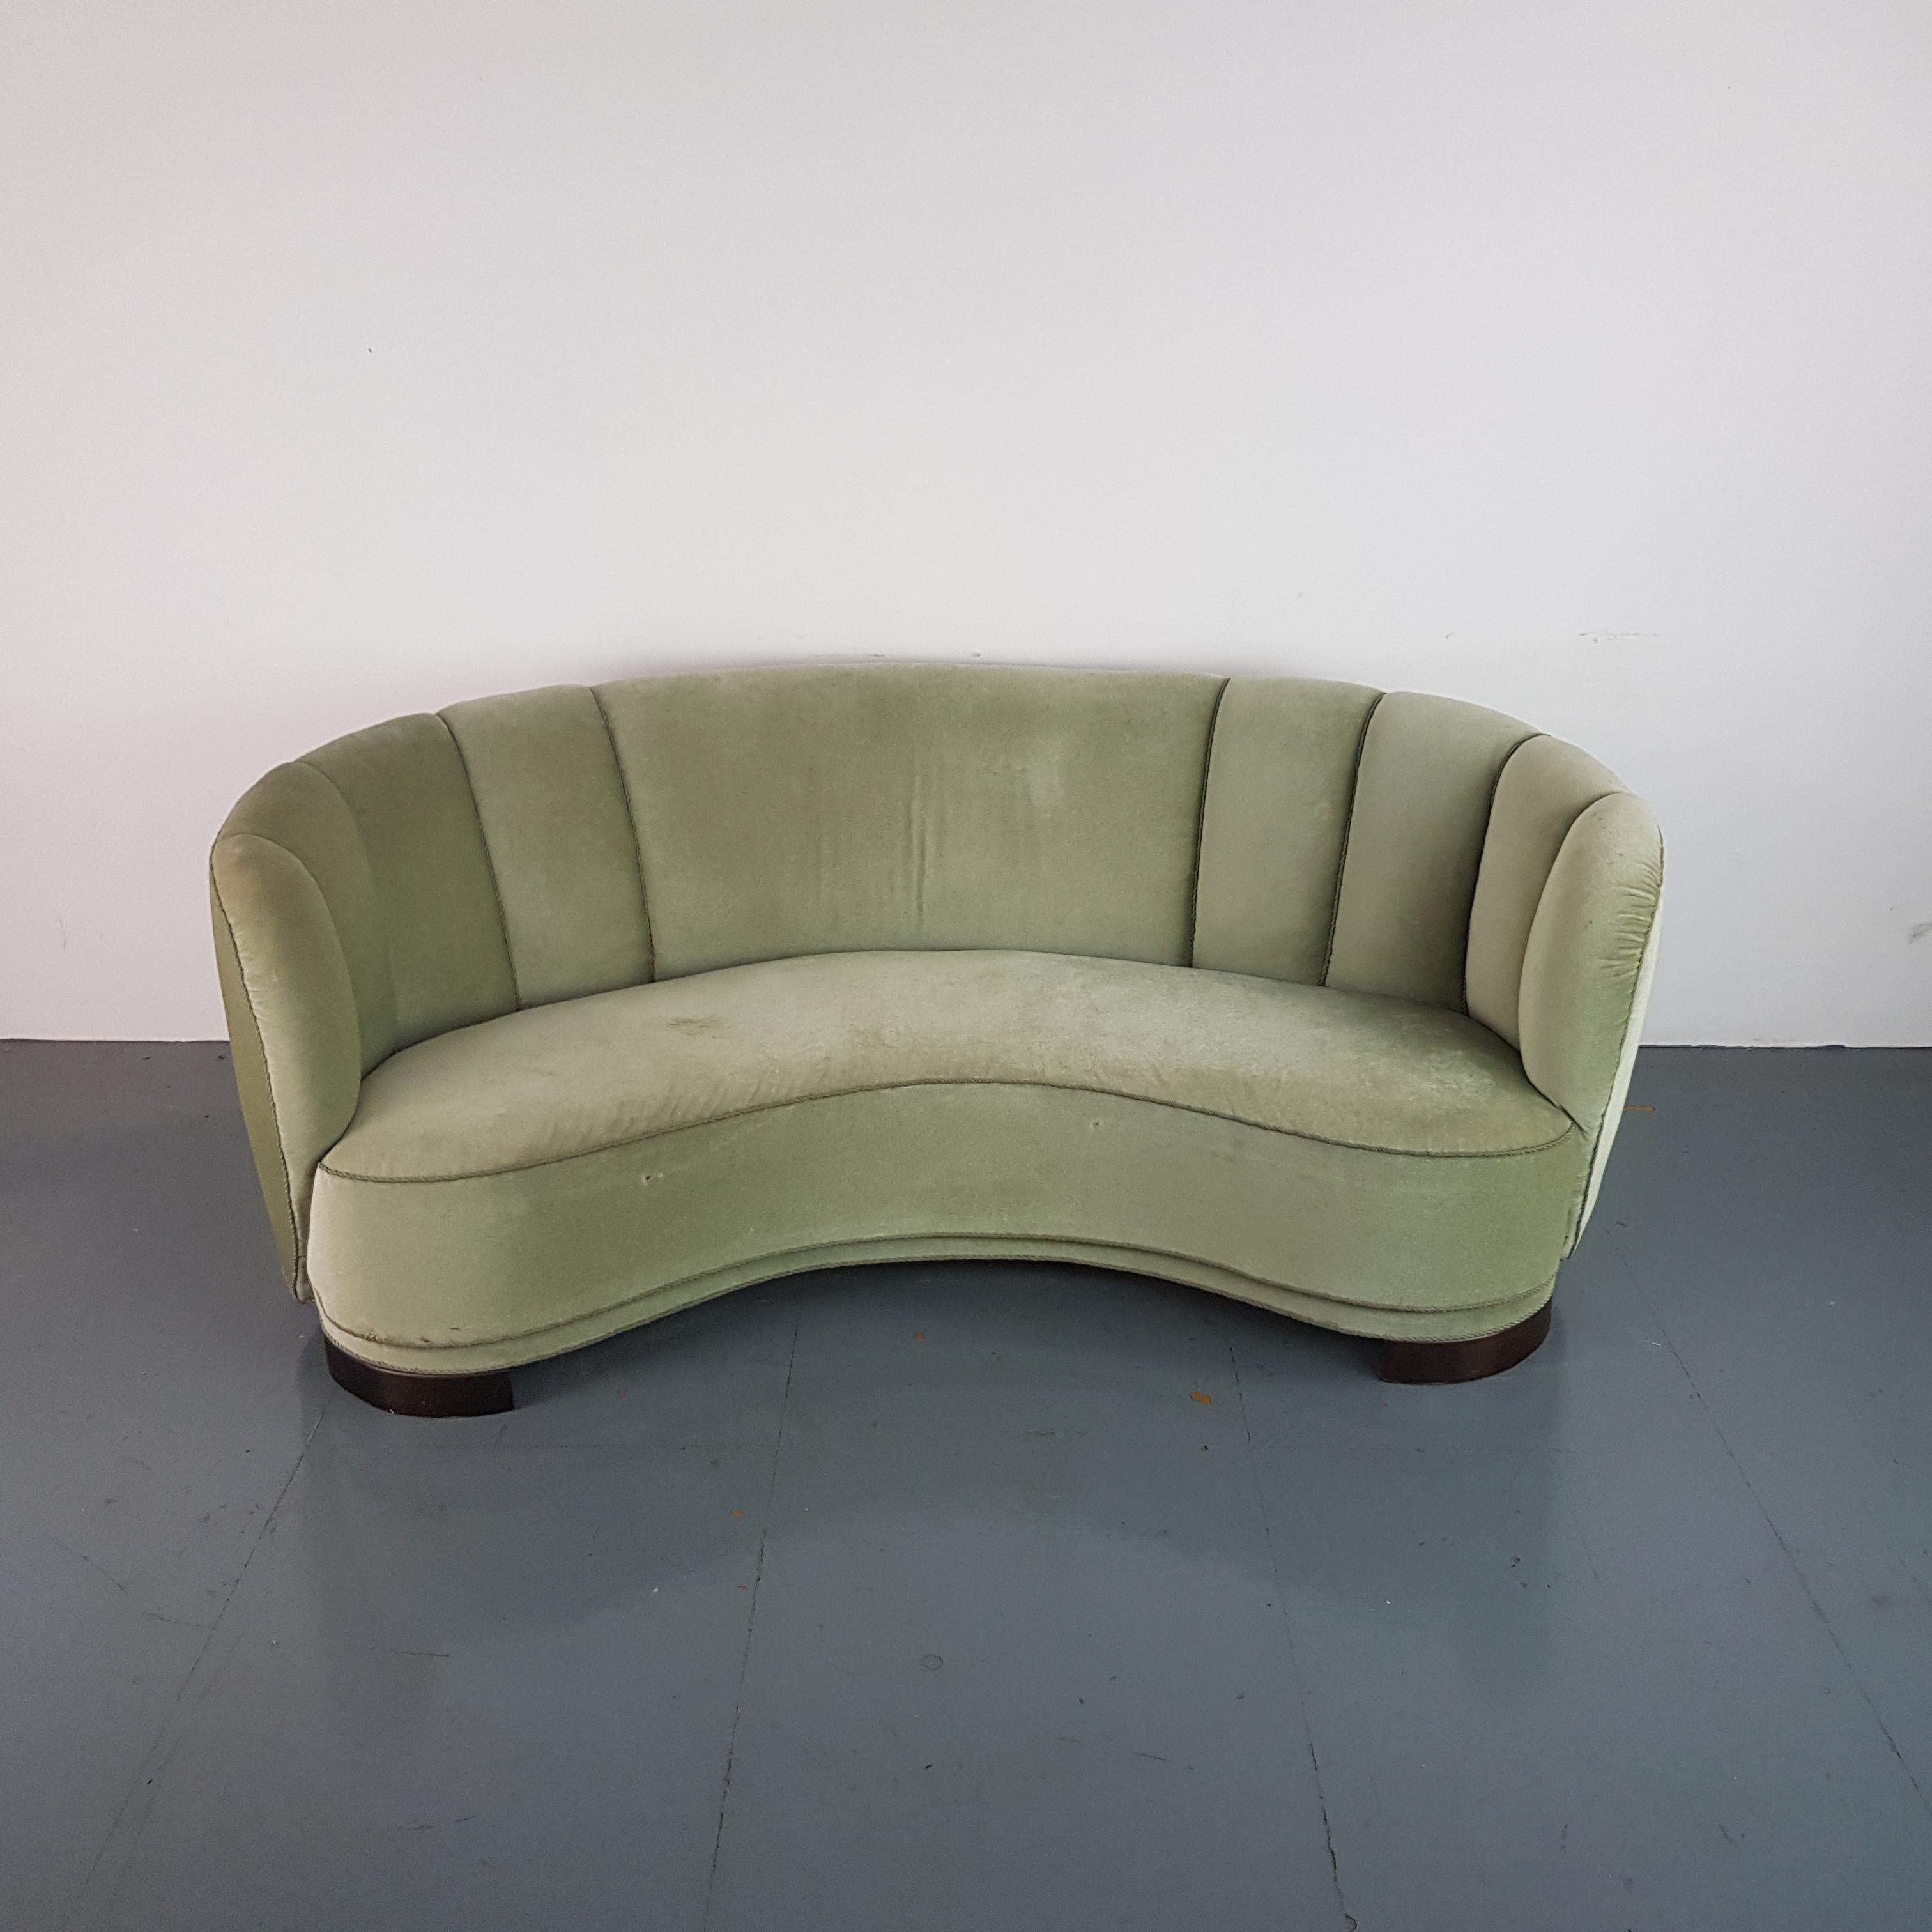 Vintage 1930s-1940s Danish Banana Sofa with Original Green Velvet Upholstery For Sale 1